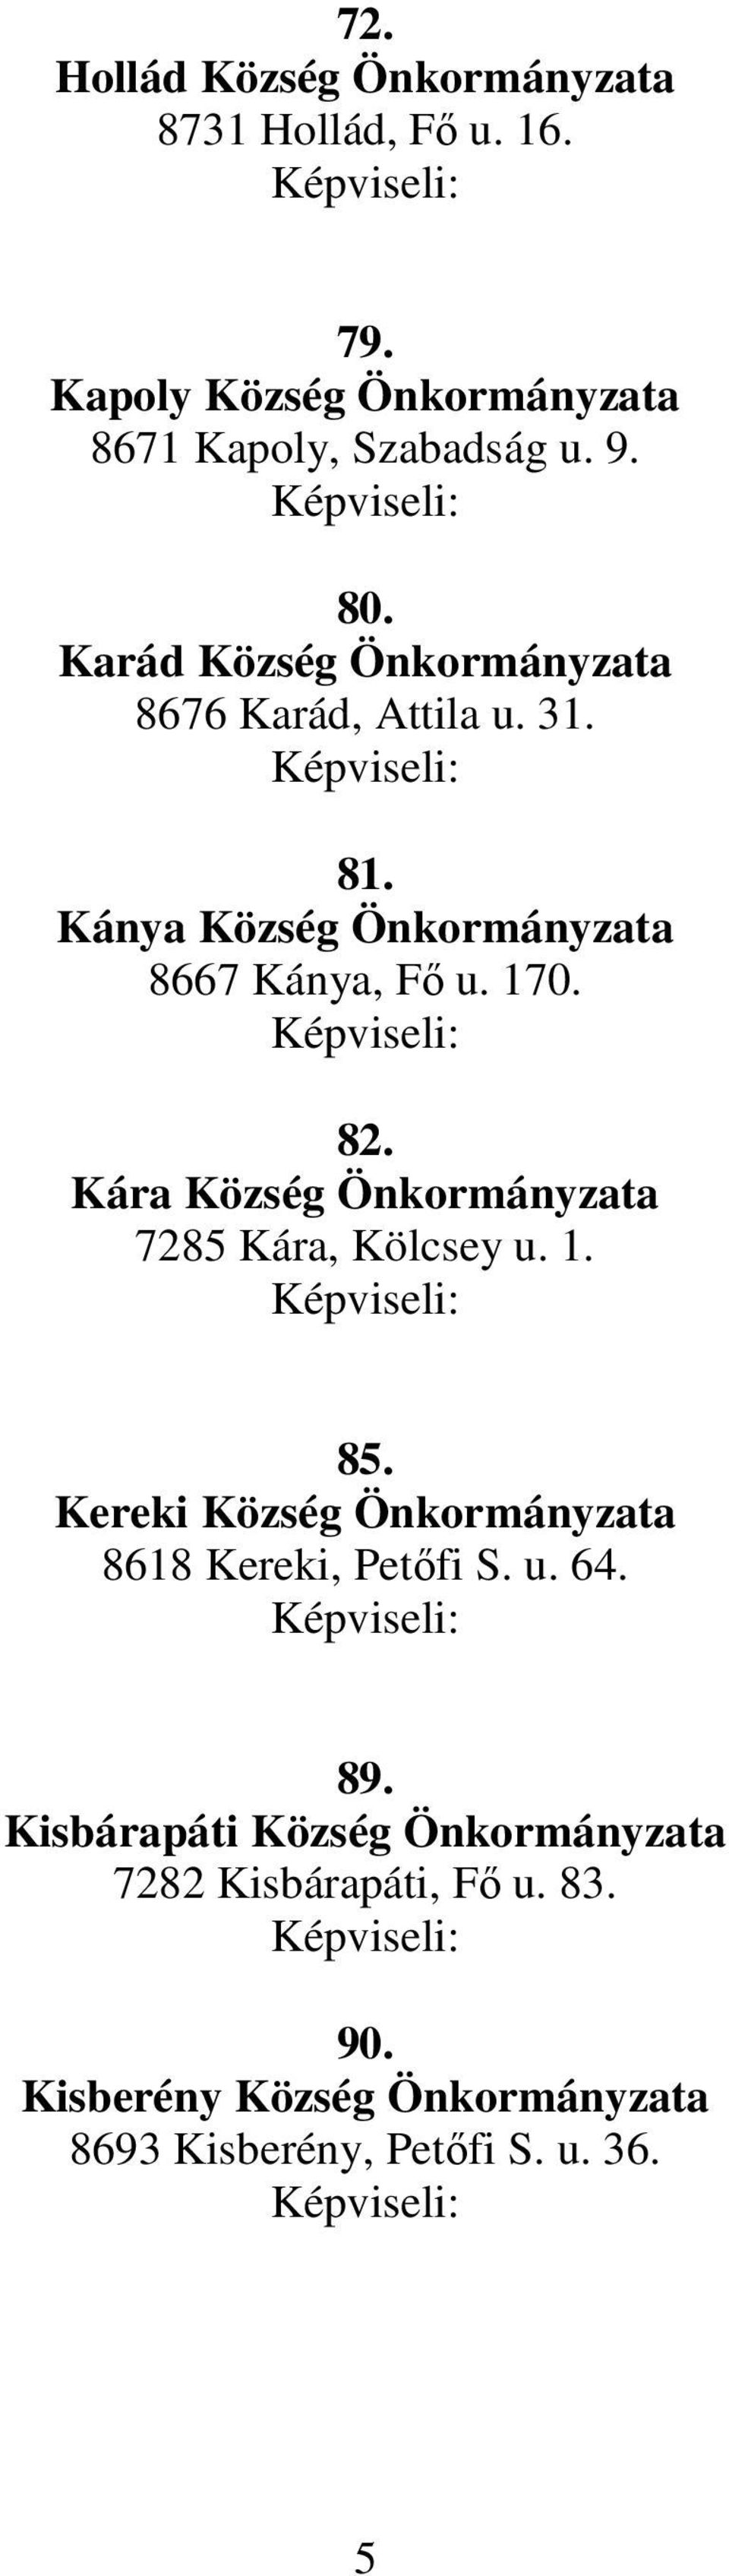 Kára Község Önkormányzata 7285 Kára, Kölcsey u. 1. 85. Kereki Község Önkormányzata 8618 Kereki, Petıfi S. u. 64. 89.